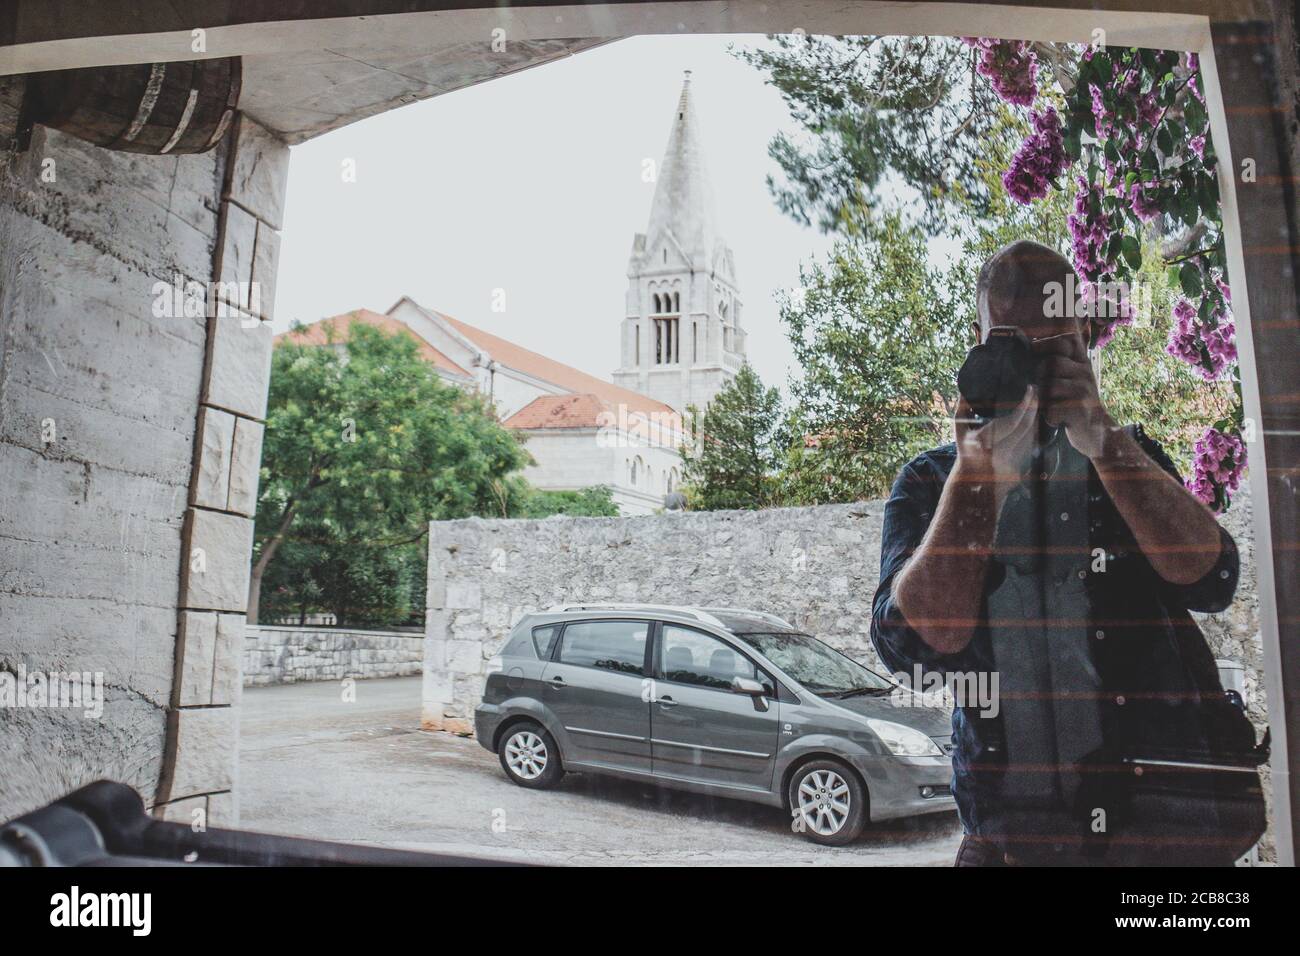 Homme prenant une photo de lui-même dans la résection d'une voiture fenêtre, église sur l'île de brac en croatie visible dans le reflet. Voyageur typique i Banque D'Images